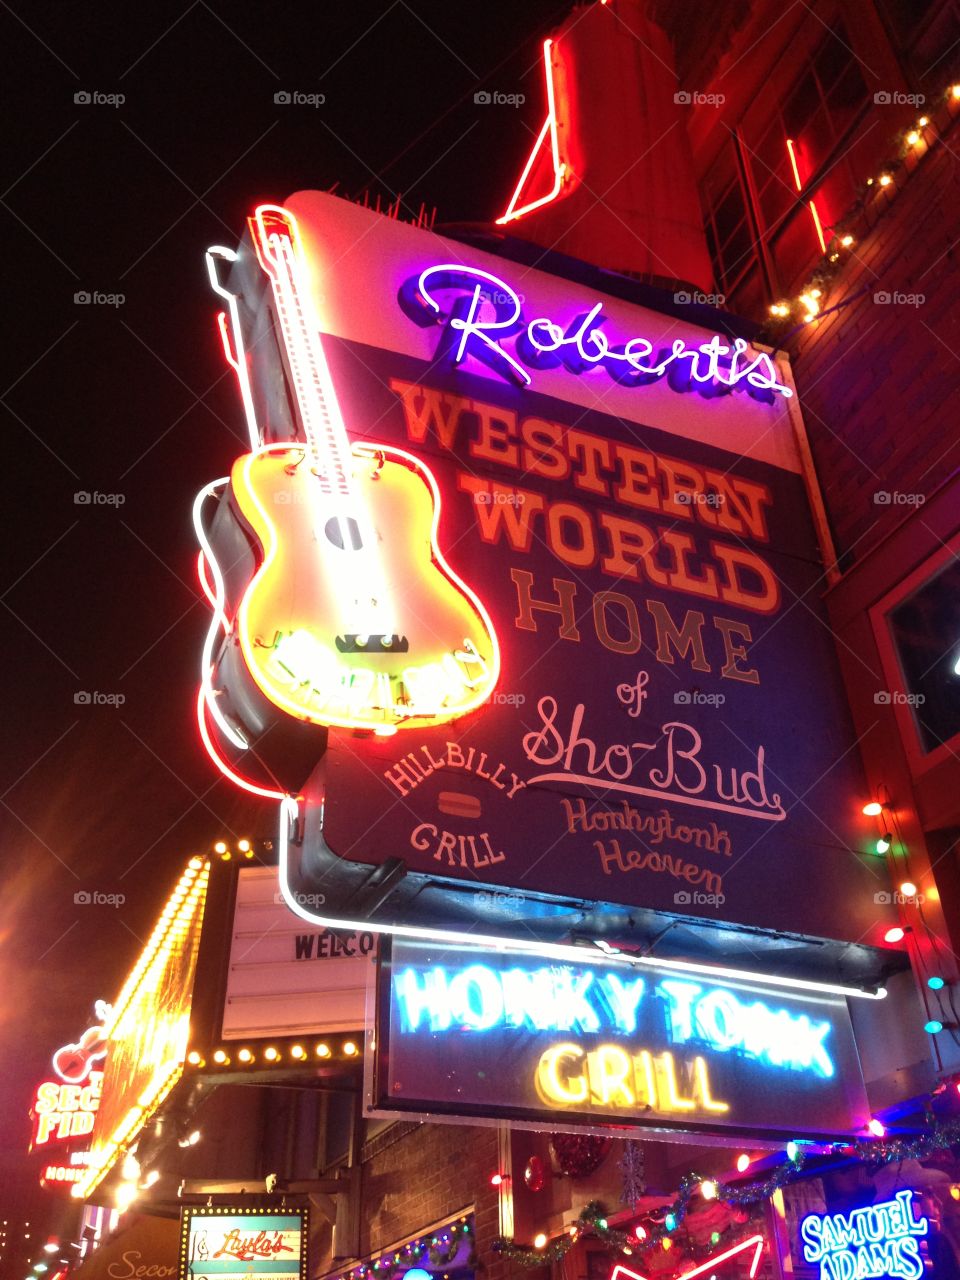 Honky Tonk. Nashville nights on Broadway. 